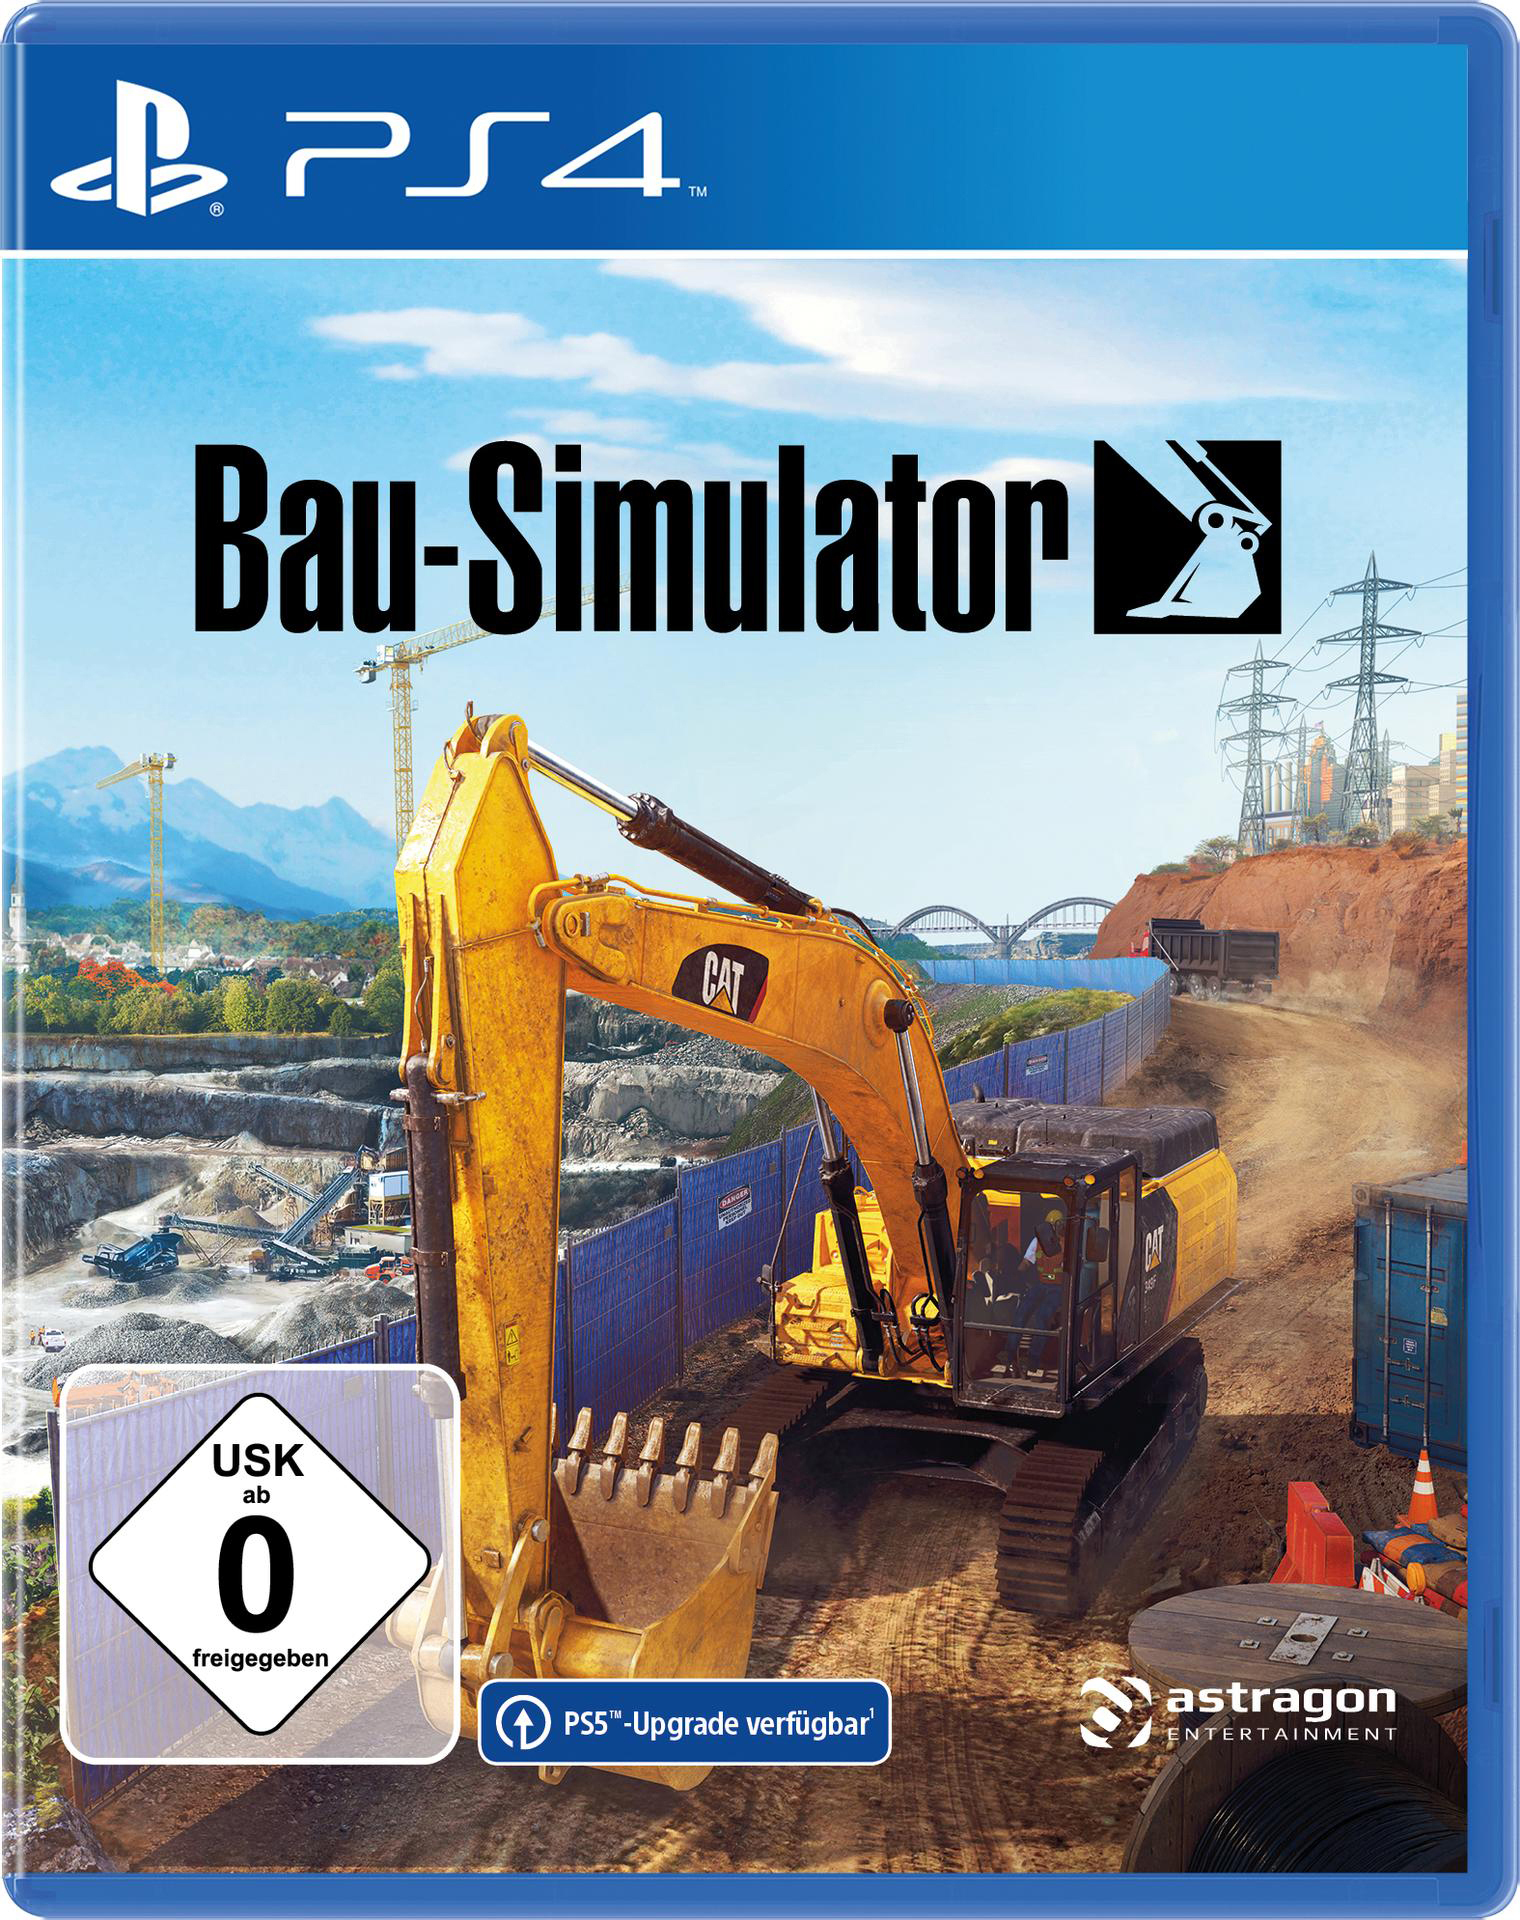 Bau-Simulator [PlayStation 4] -